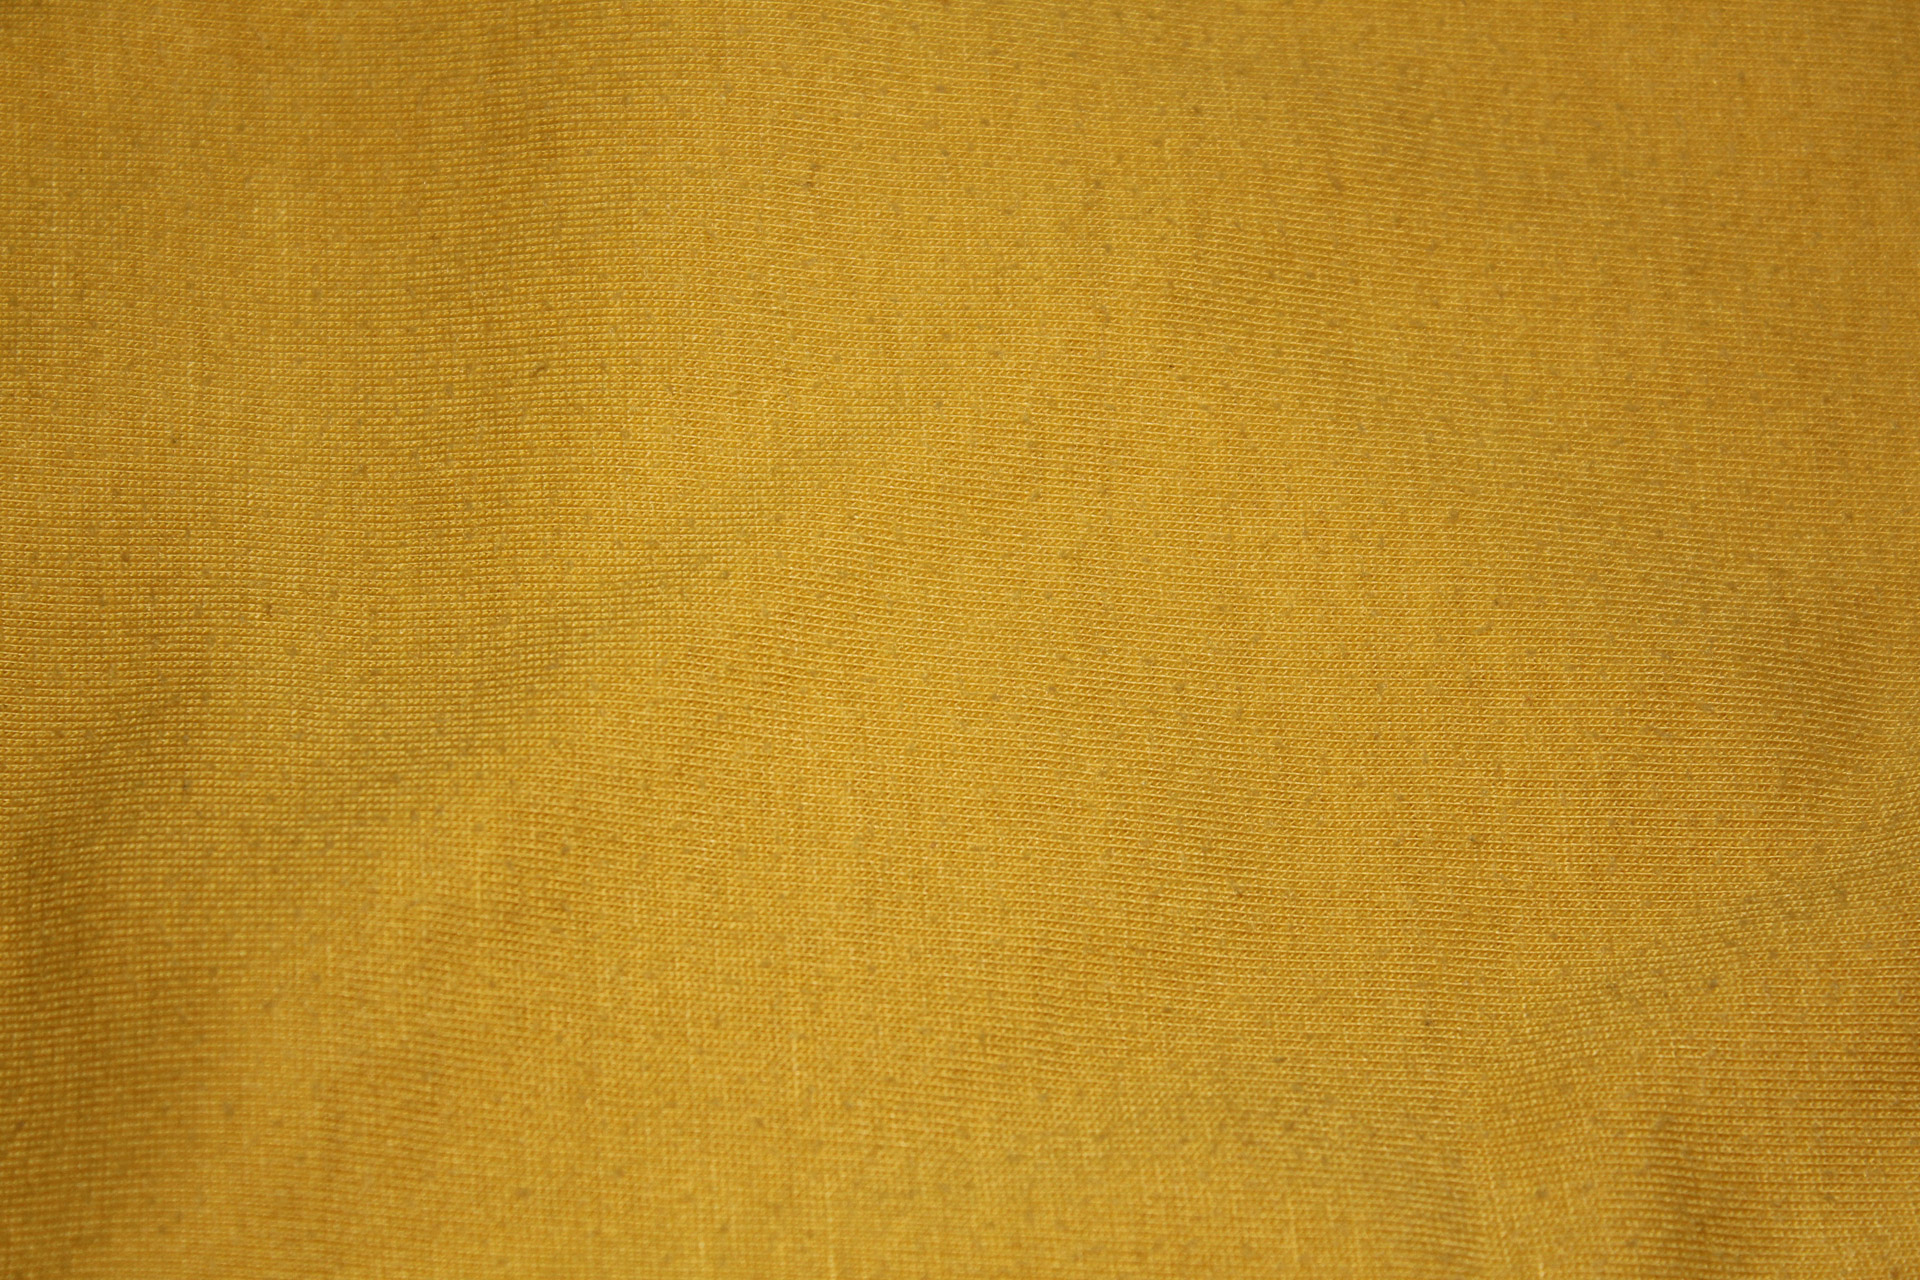 textile background yellow gold textile background textile free photo